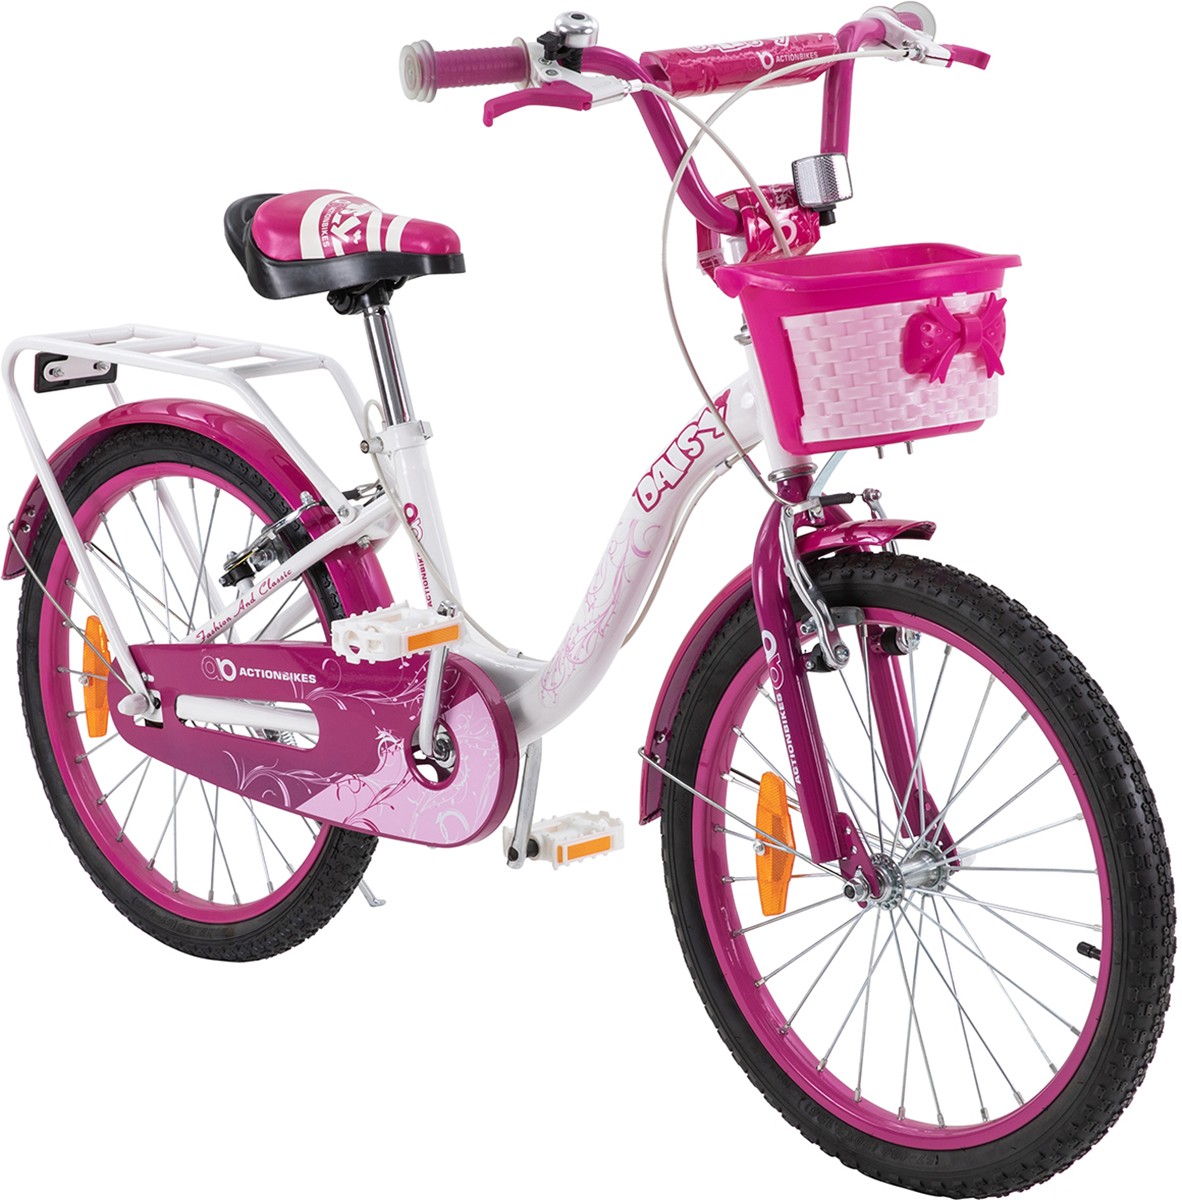 01-kinderfahrrad-20-zoll-pink-actionbikes-motors-daisy-start